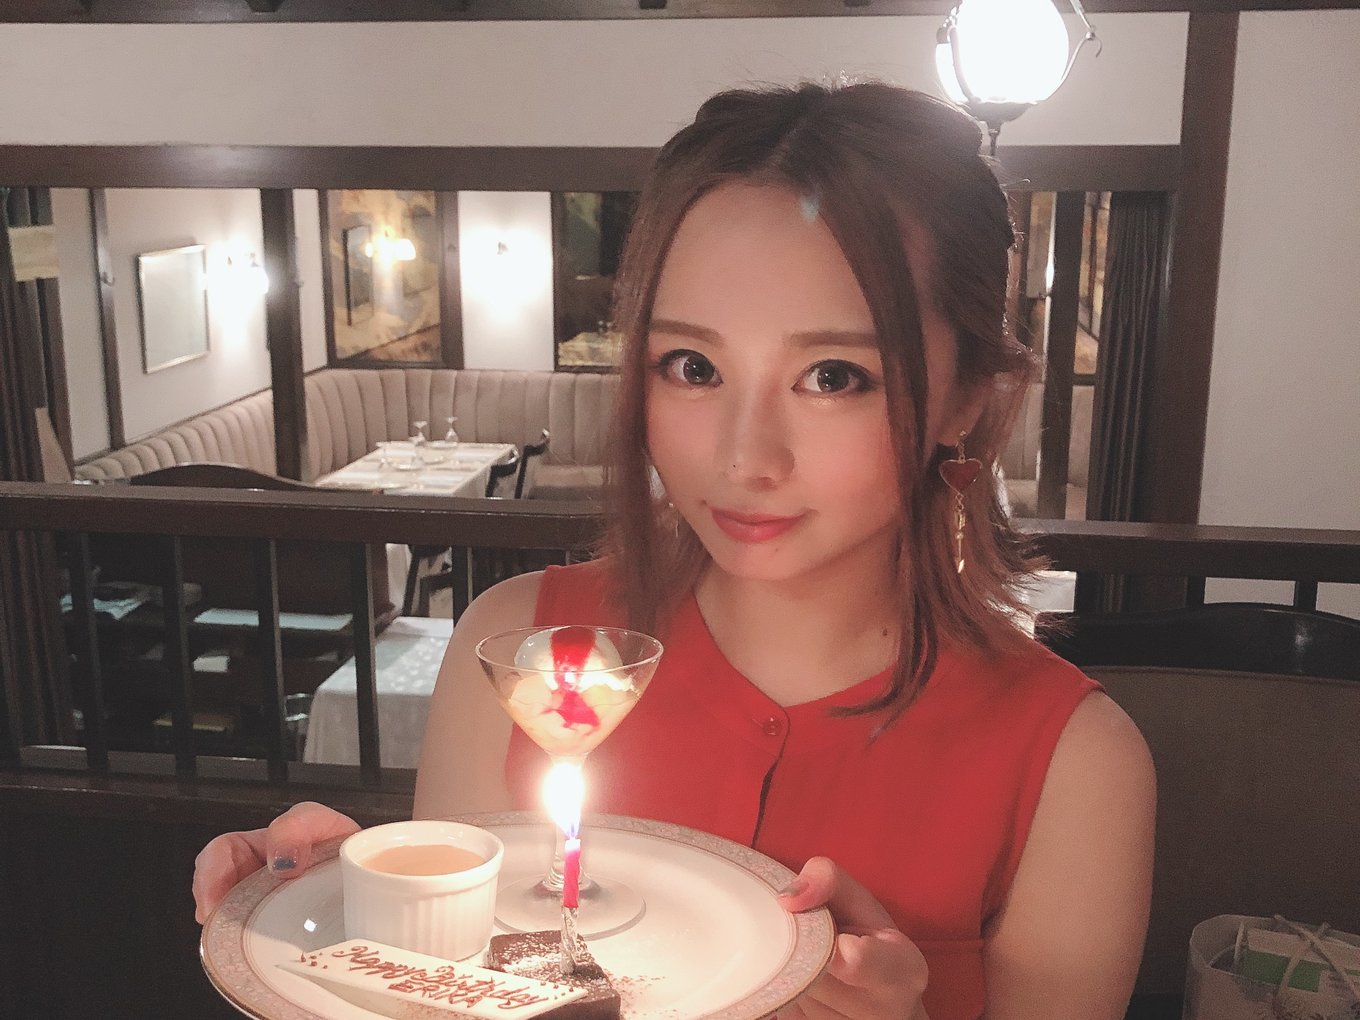 東京都内で記念日ディナーデート完全版 彼女が喜ぶおすすめレストラン18選 Playlife プレイライフ